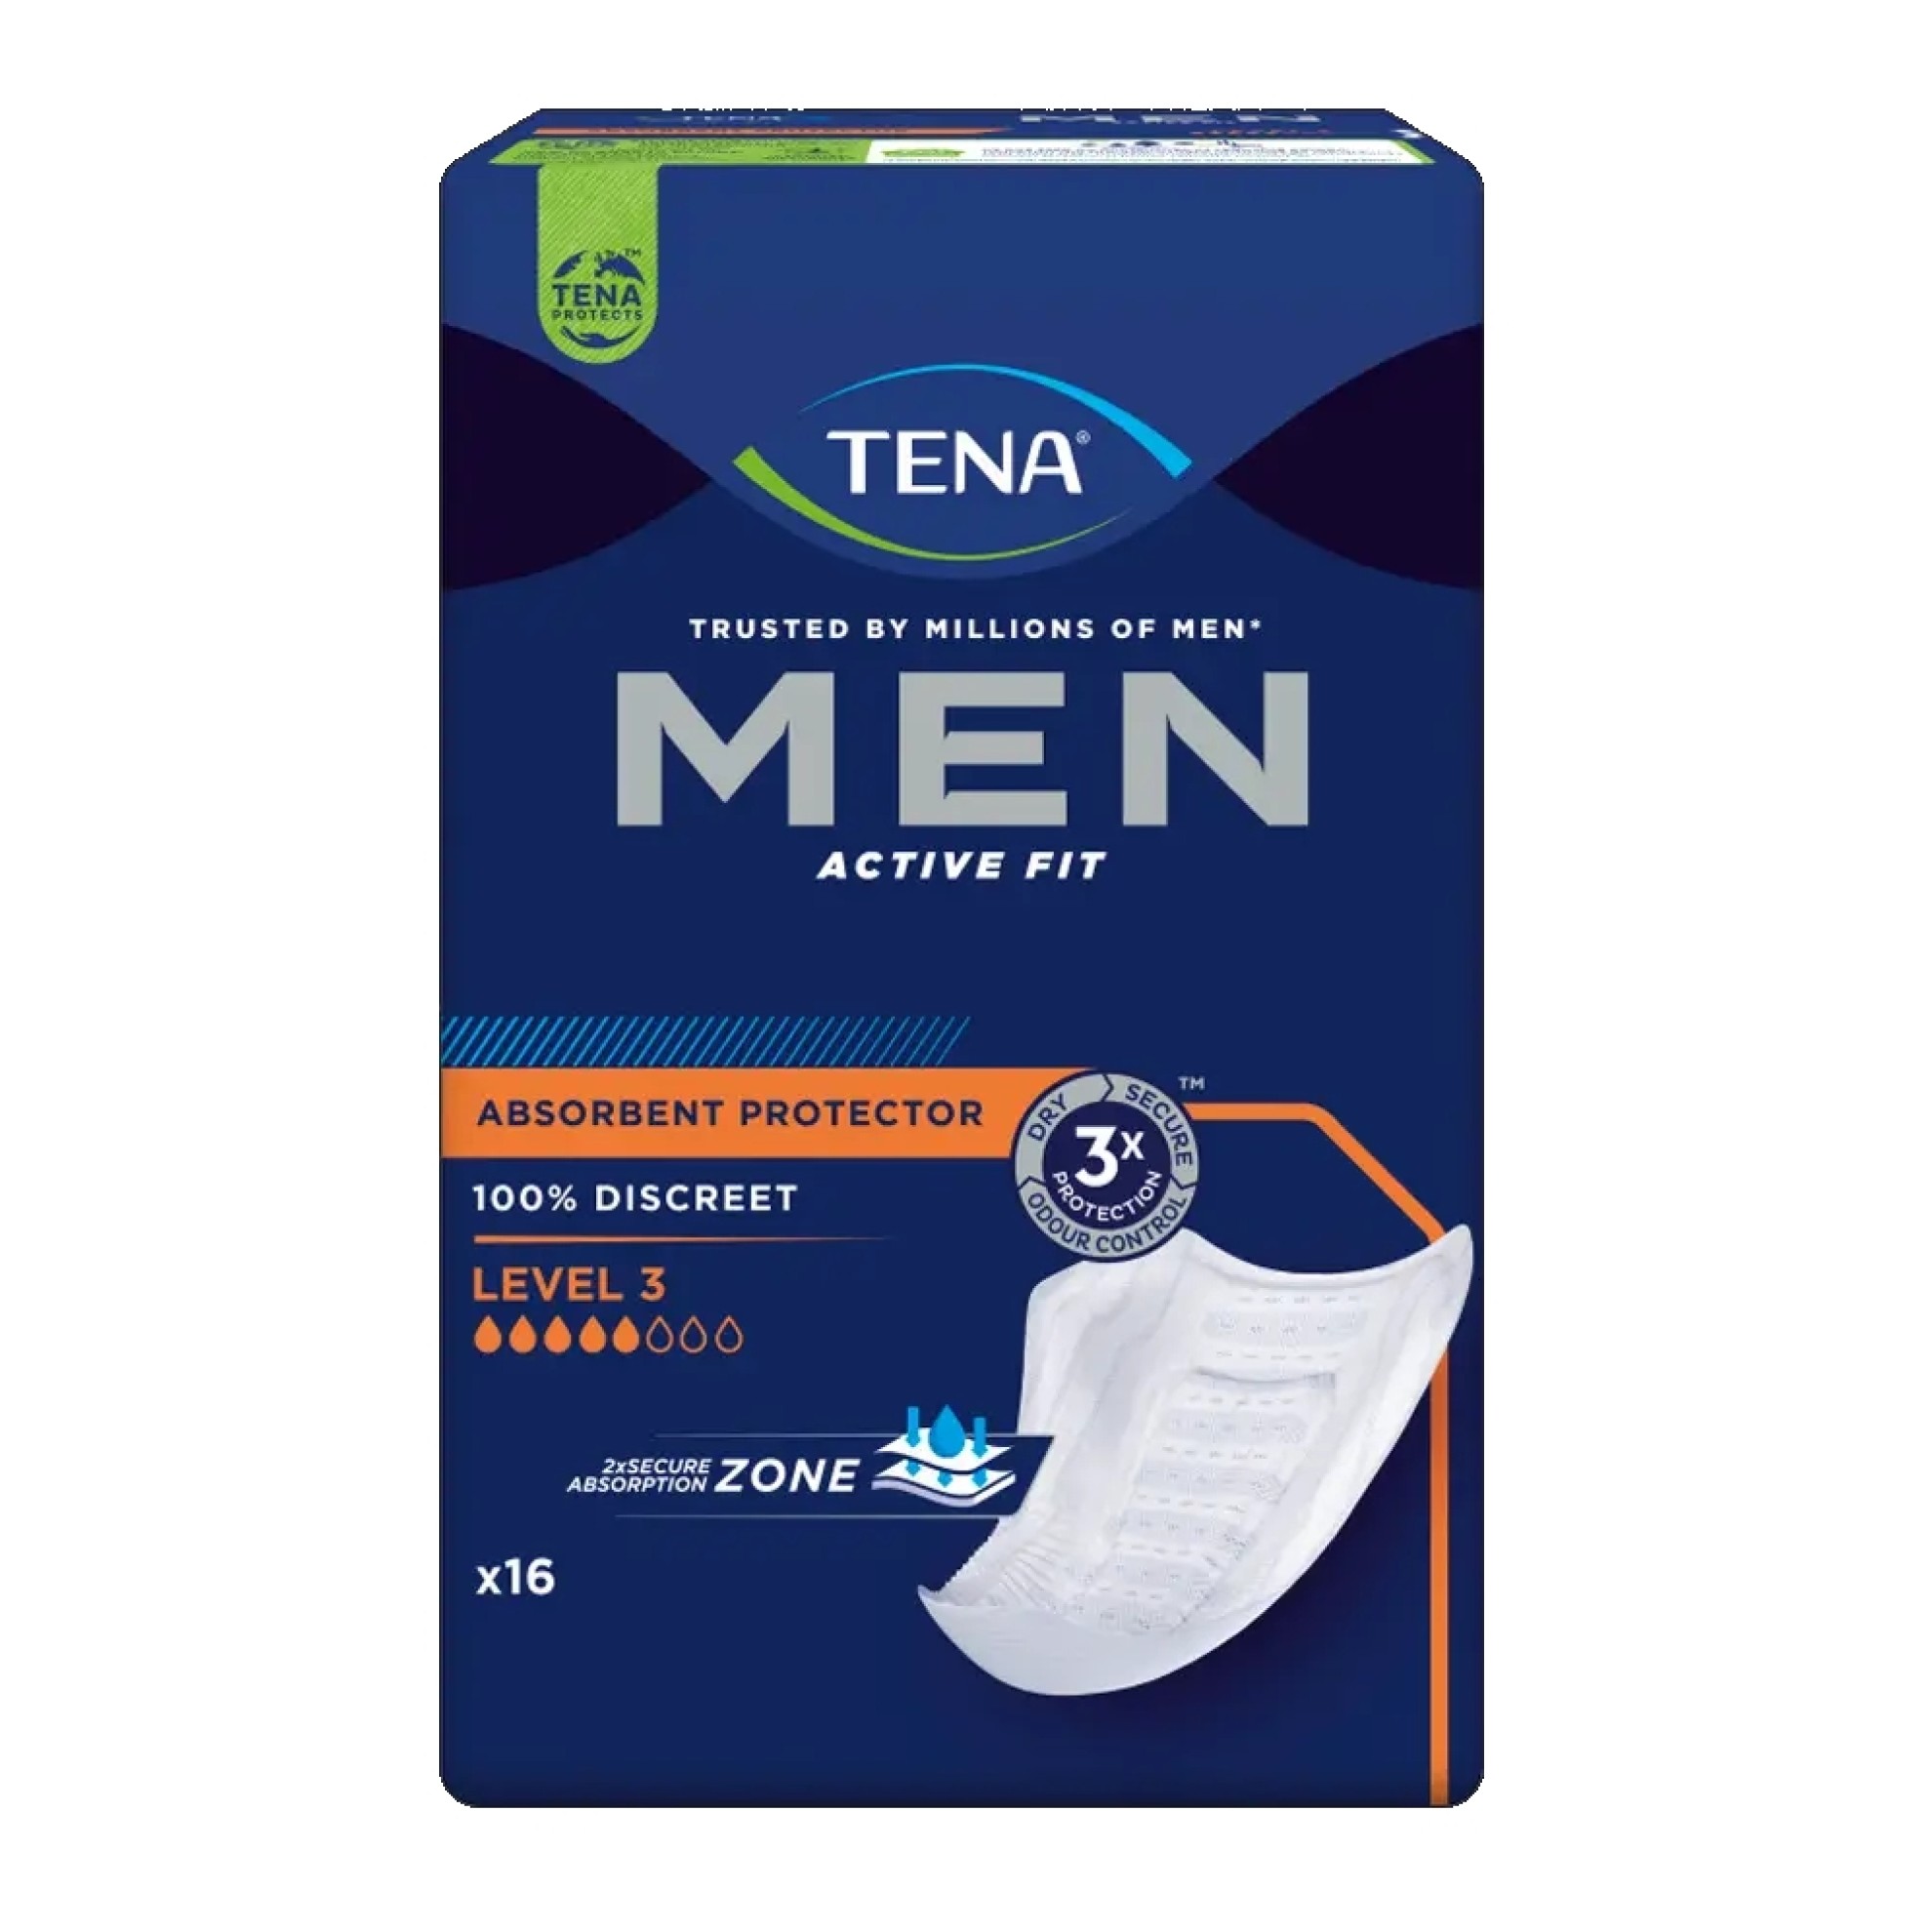 TENA MEN Active Fit Level 3 Inkontinenz Einlagen Sonderangebot